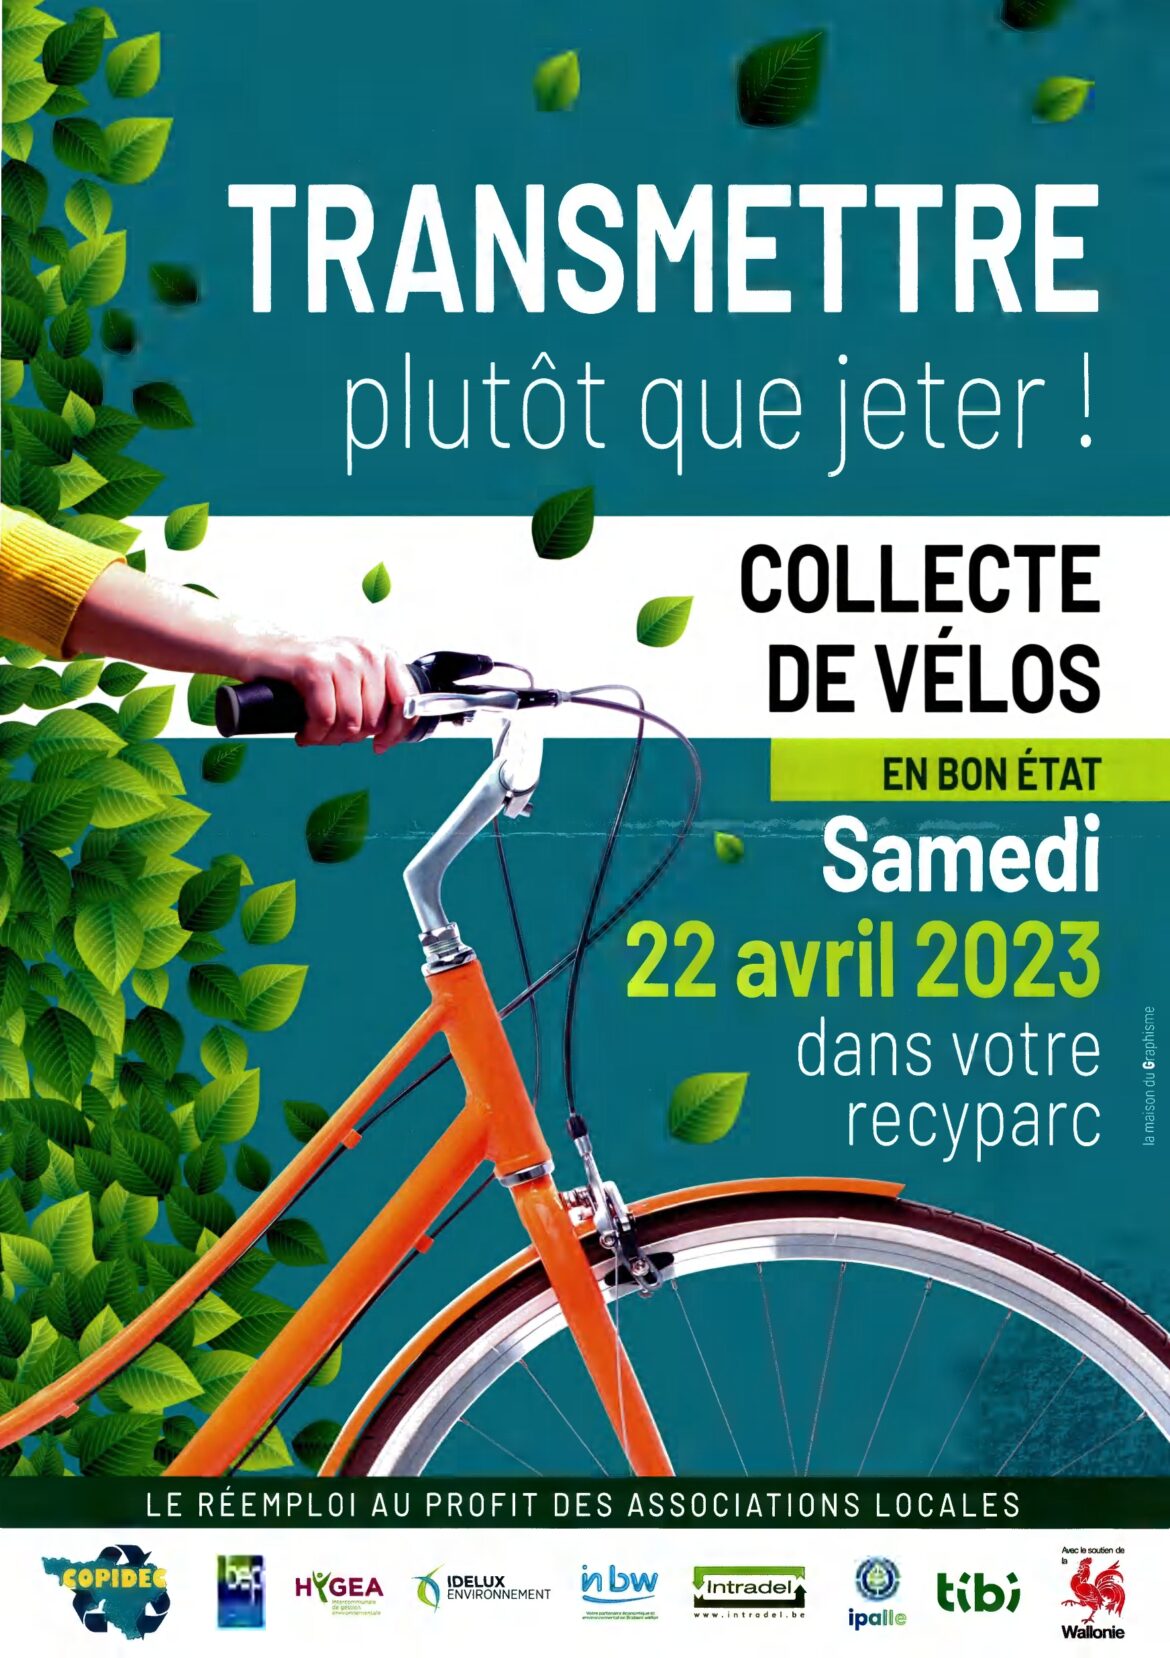 Participez à la collecte de vélos en bon état le 22 avril prochain !